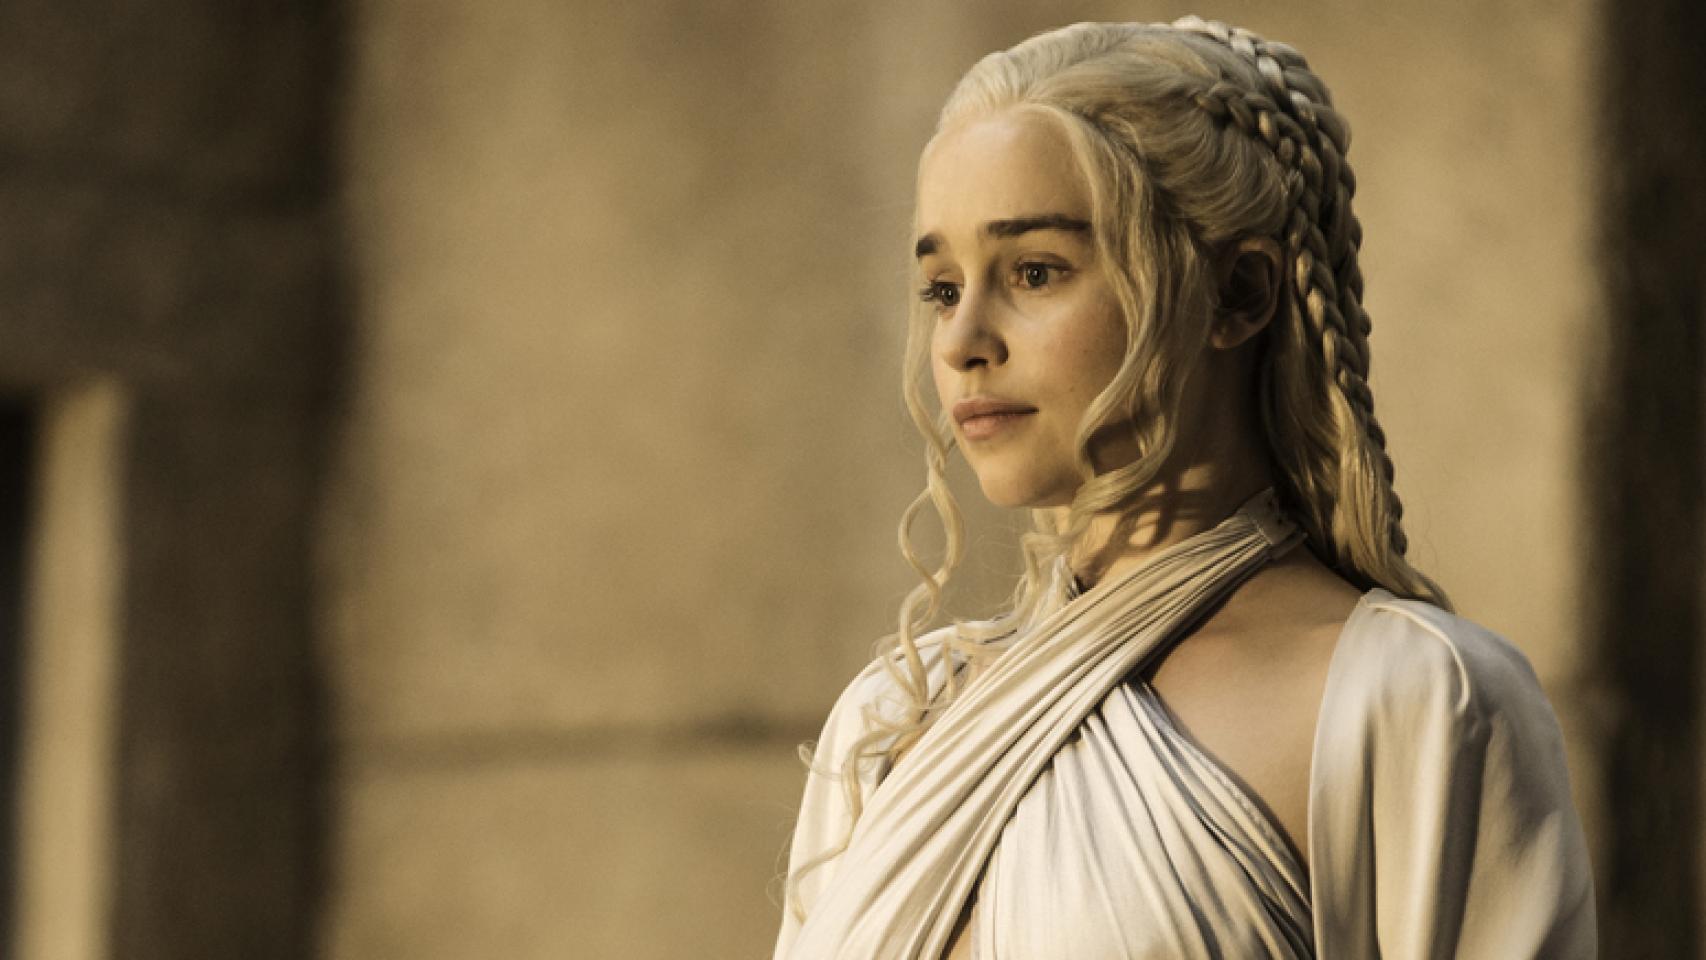 Emilia Clarke como Daenerys Targaryen en 'Juego de tronos'